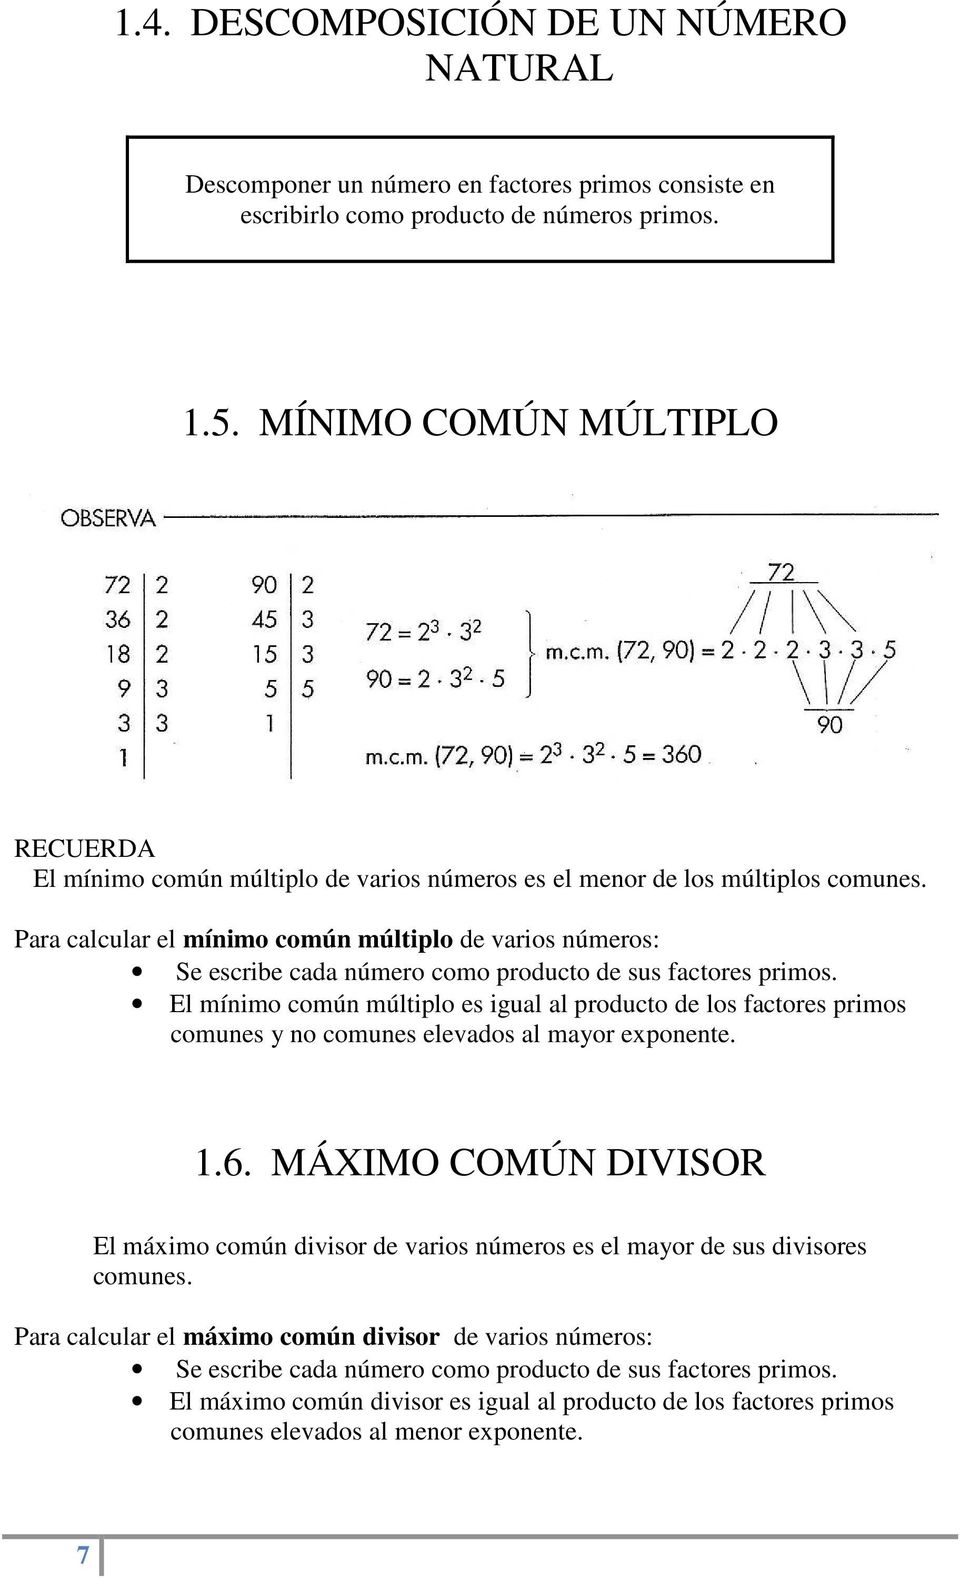 Para calcular el mínimo común múltiplo de varios números: Se escribe cada número como producto de sus factores primos.